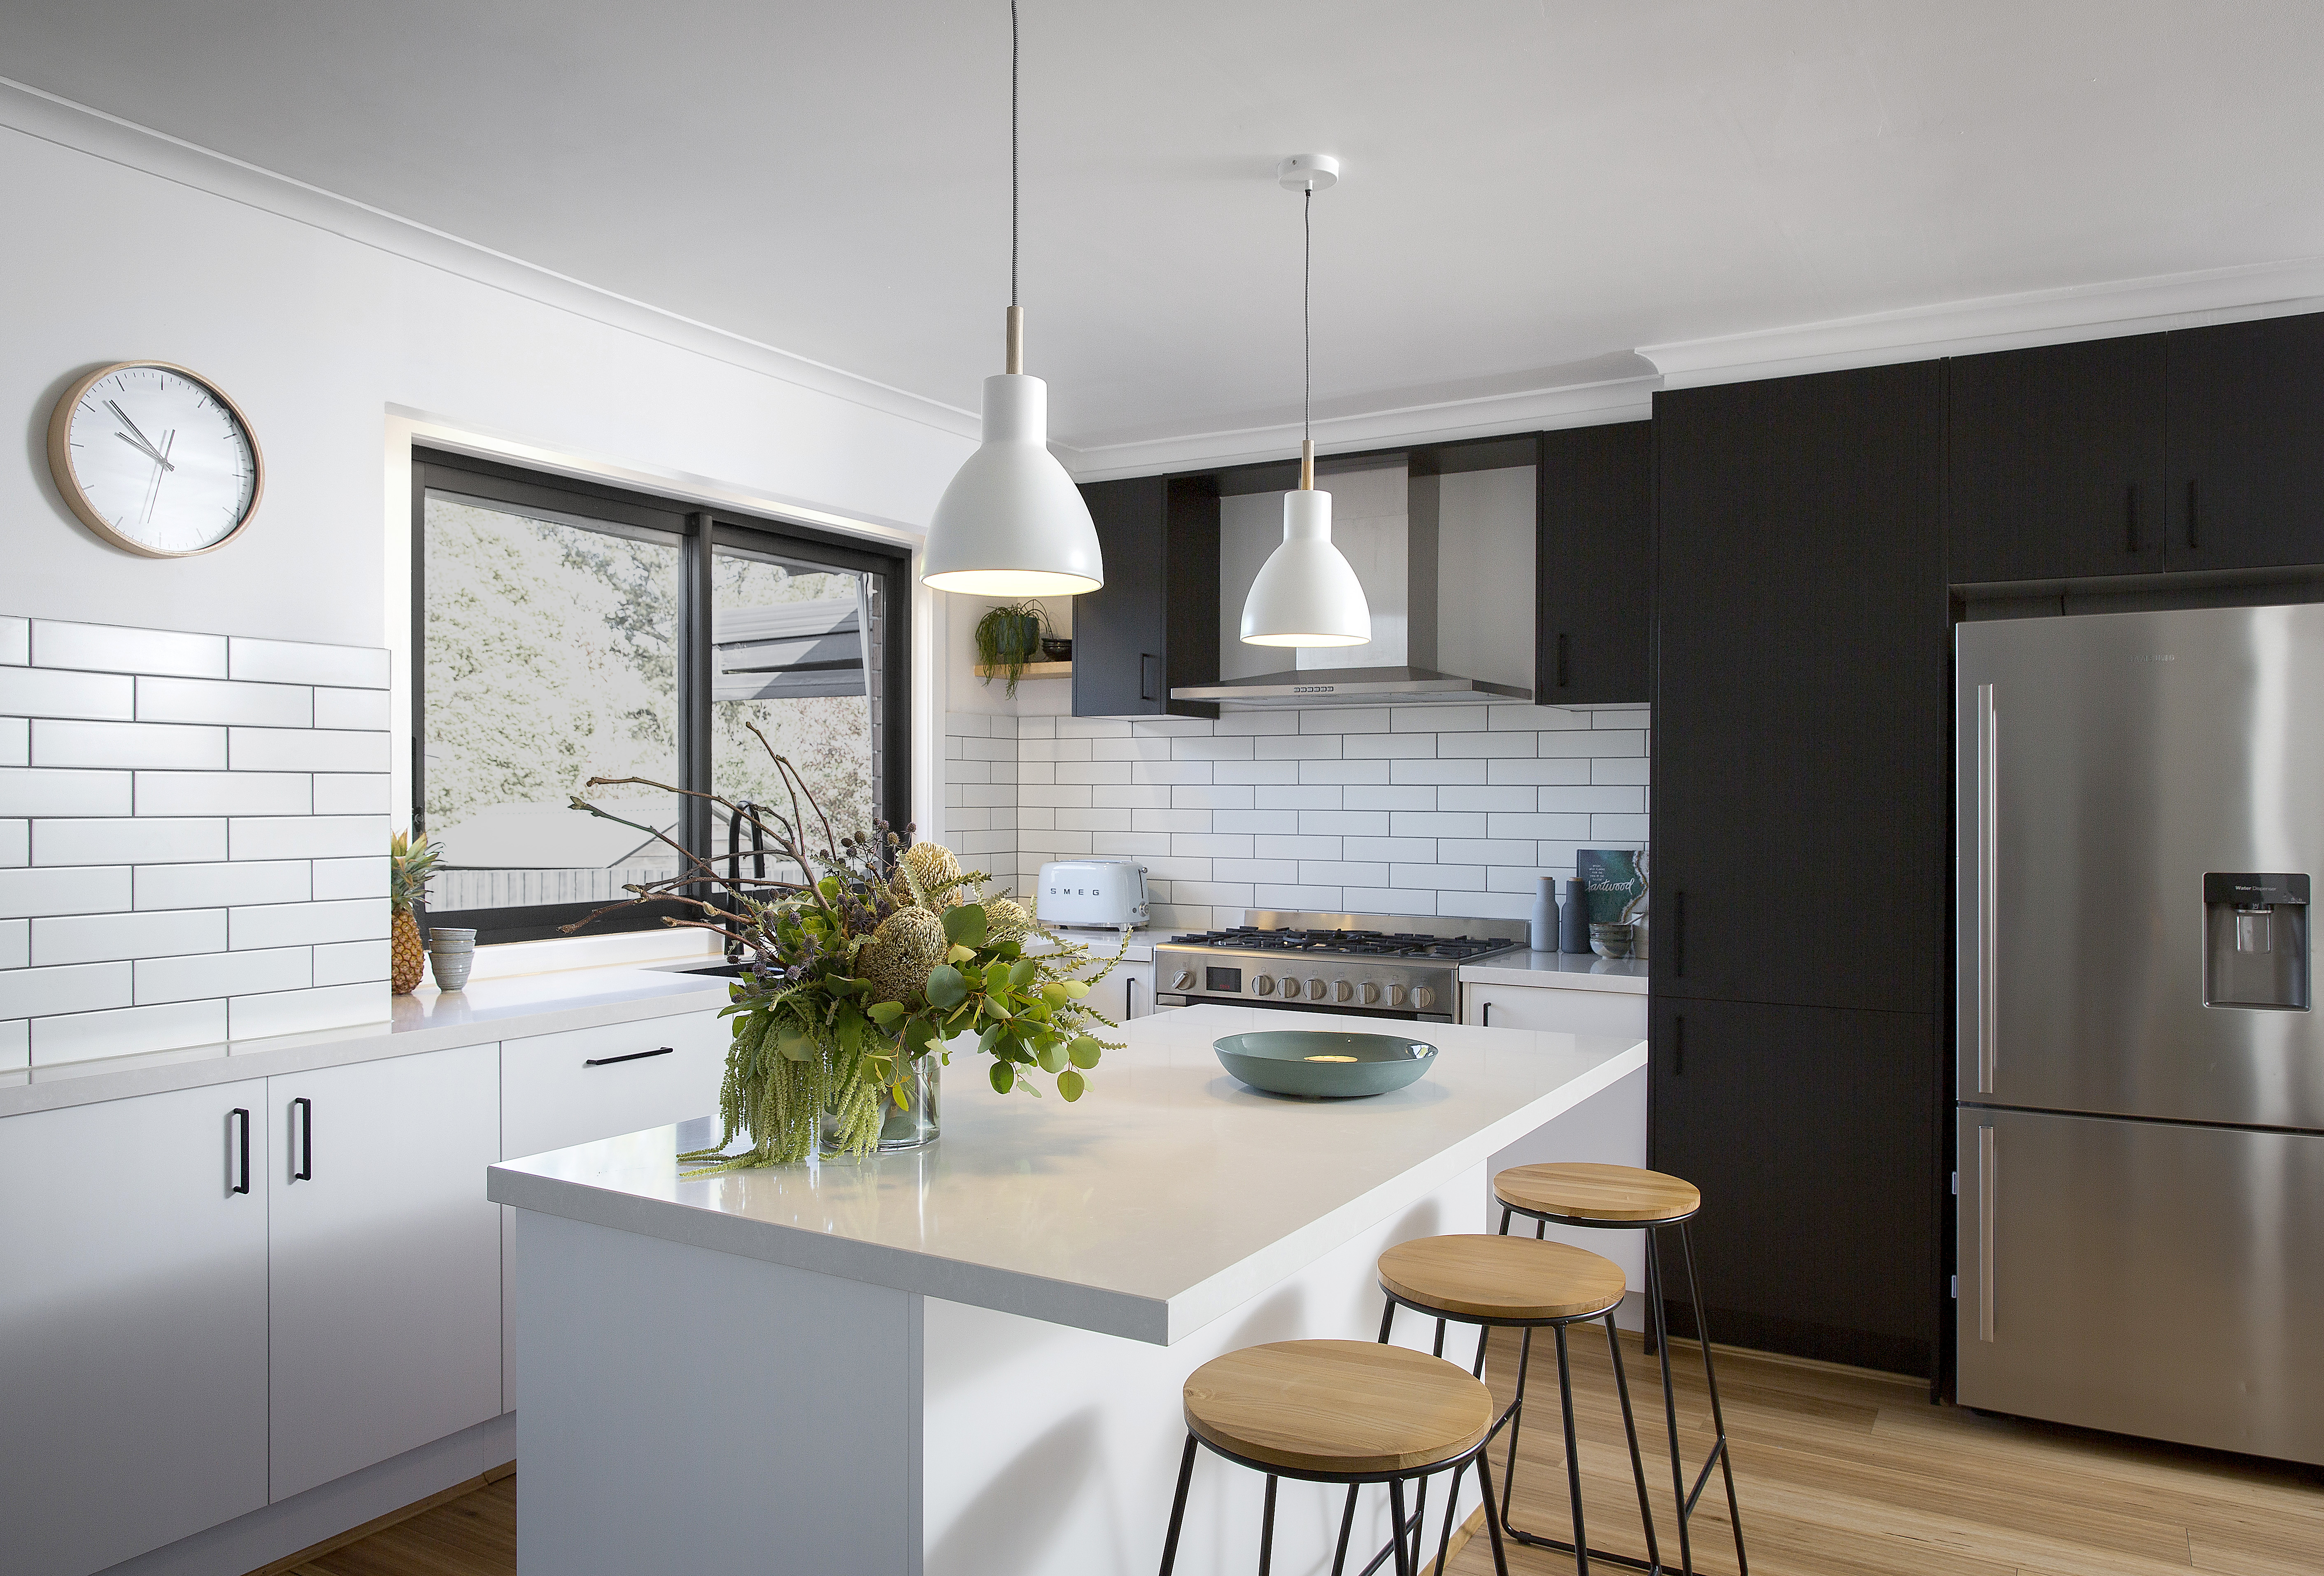 Contemporary small kitchen design in black and white